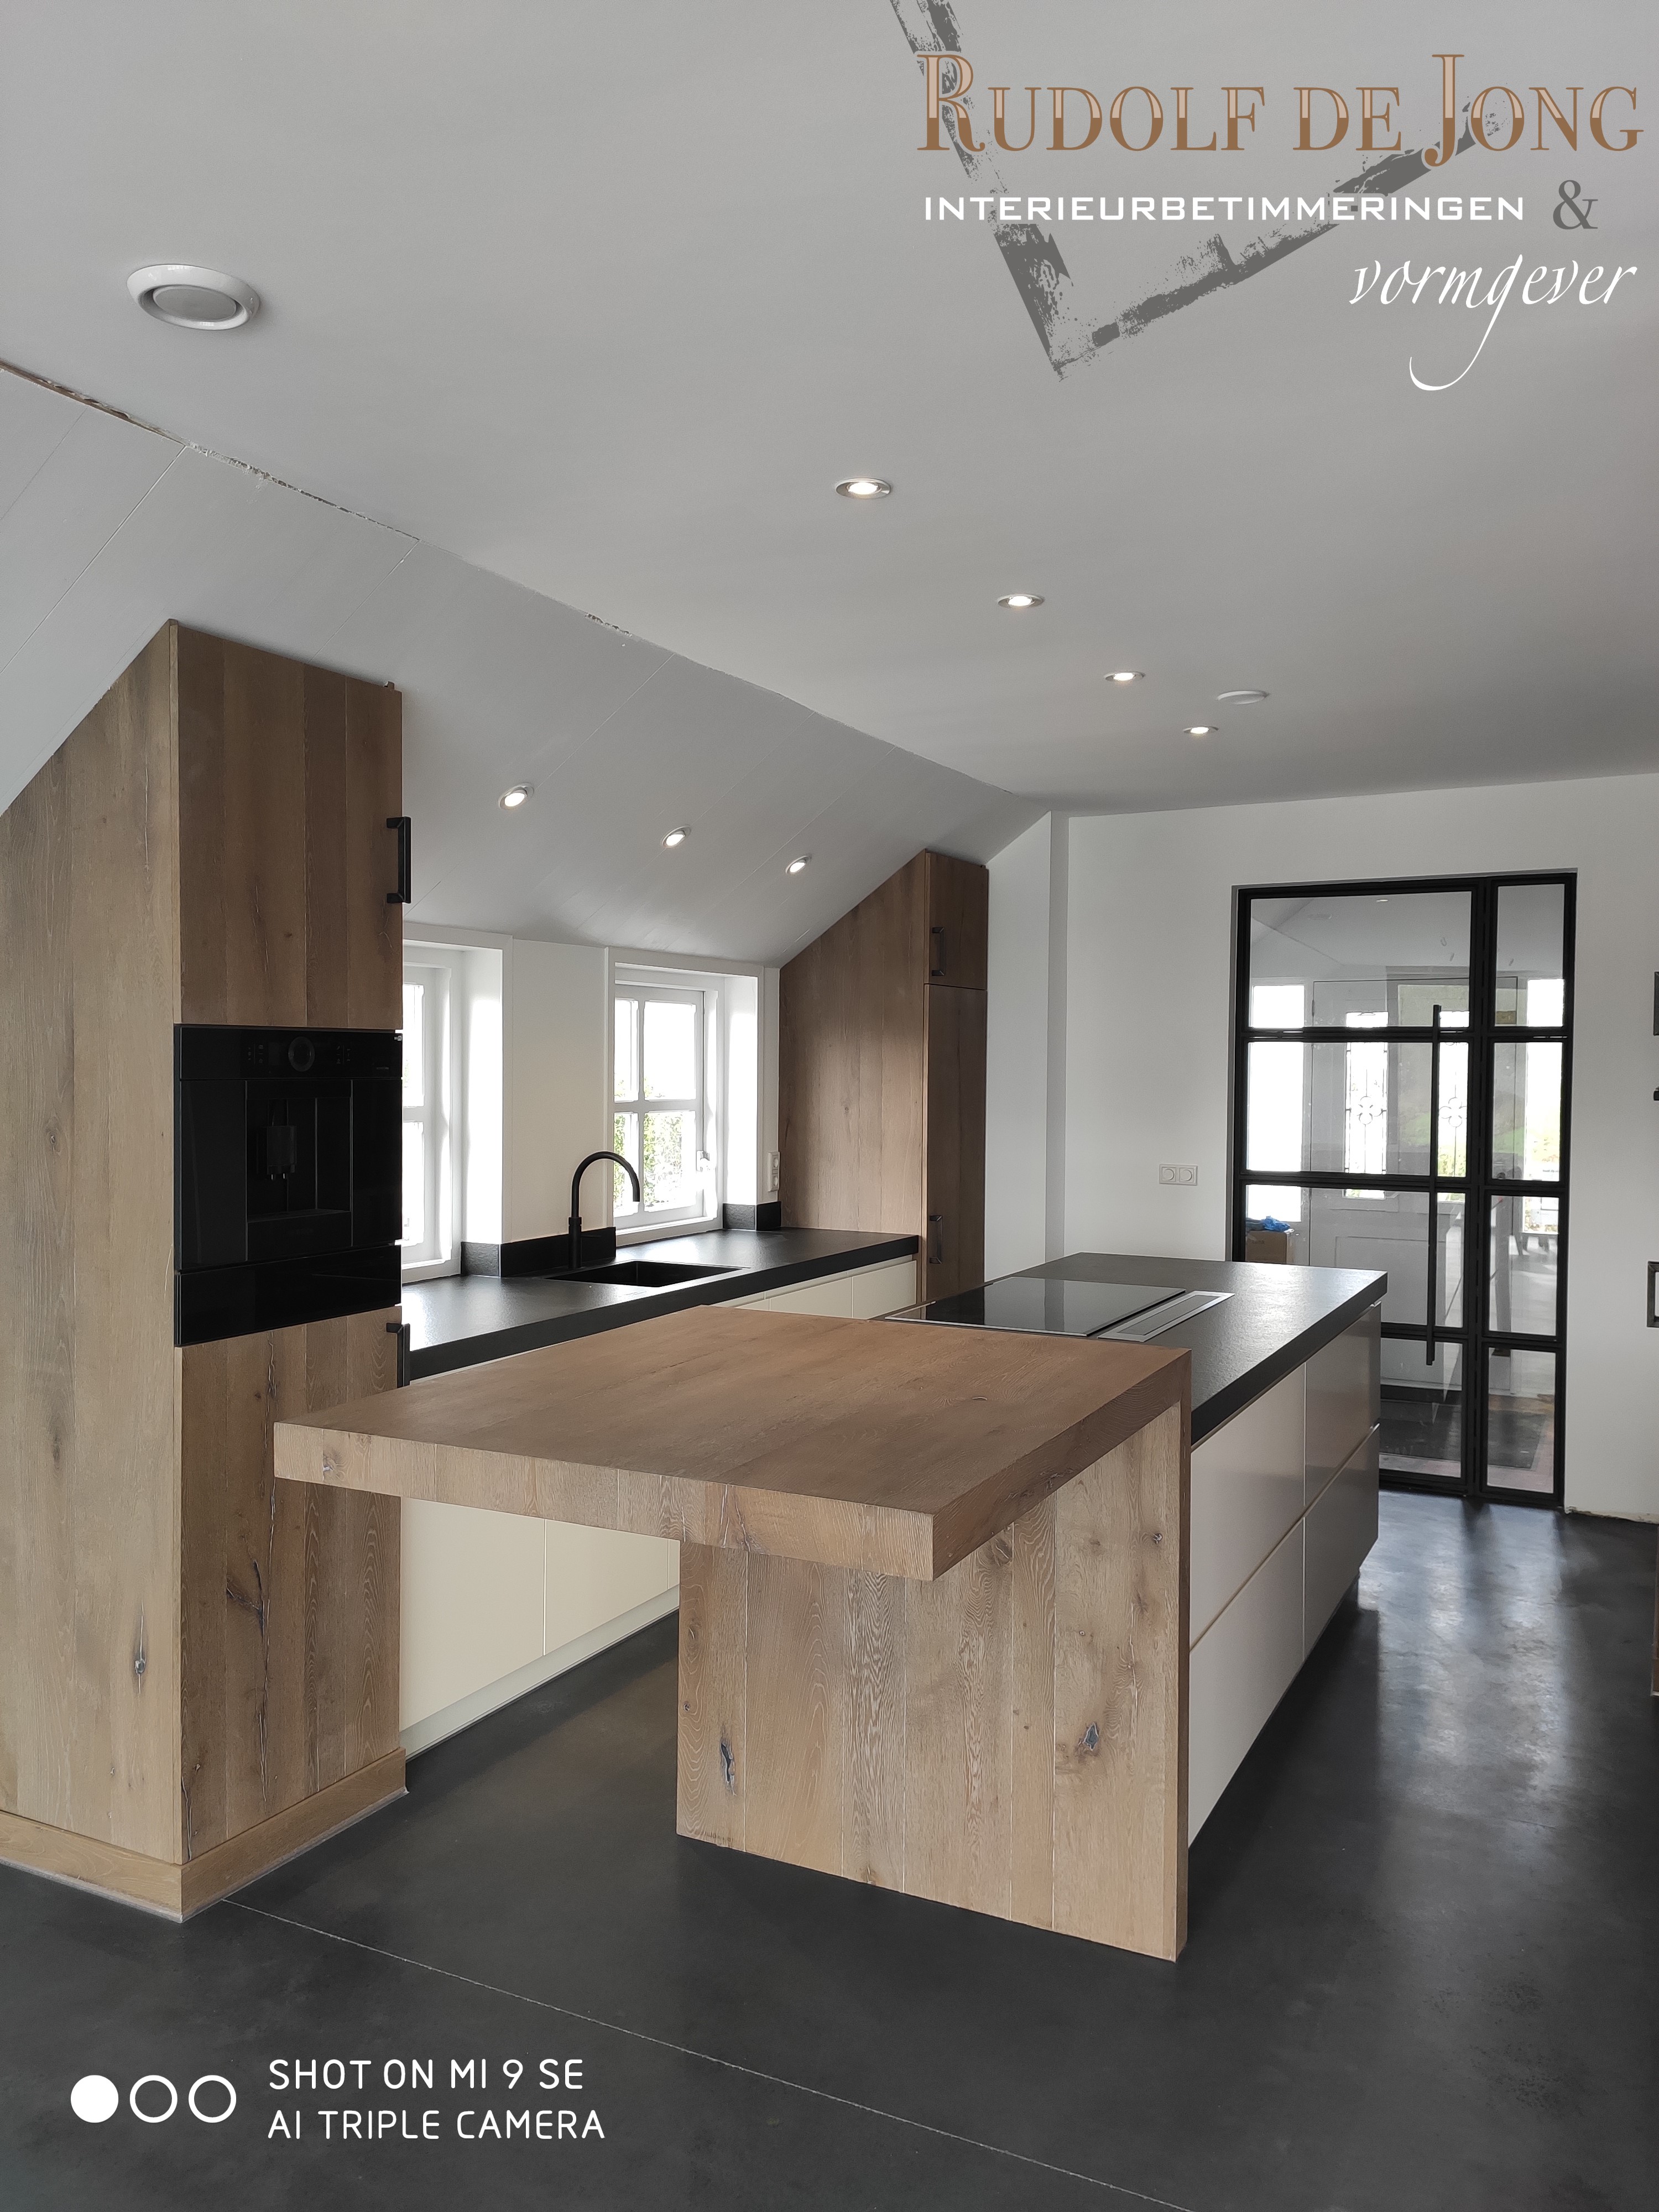 Foto : Rustiek, eiken keuken in combinatie met modern, greeploze design